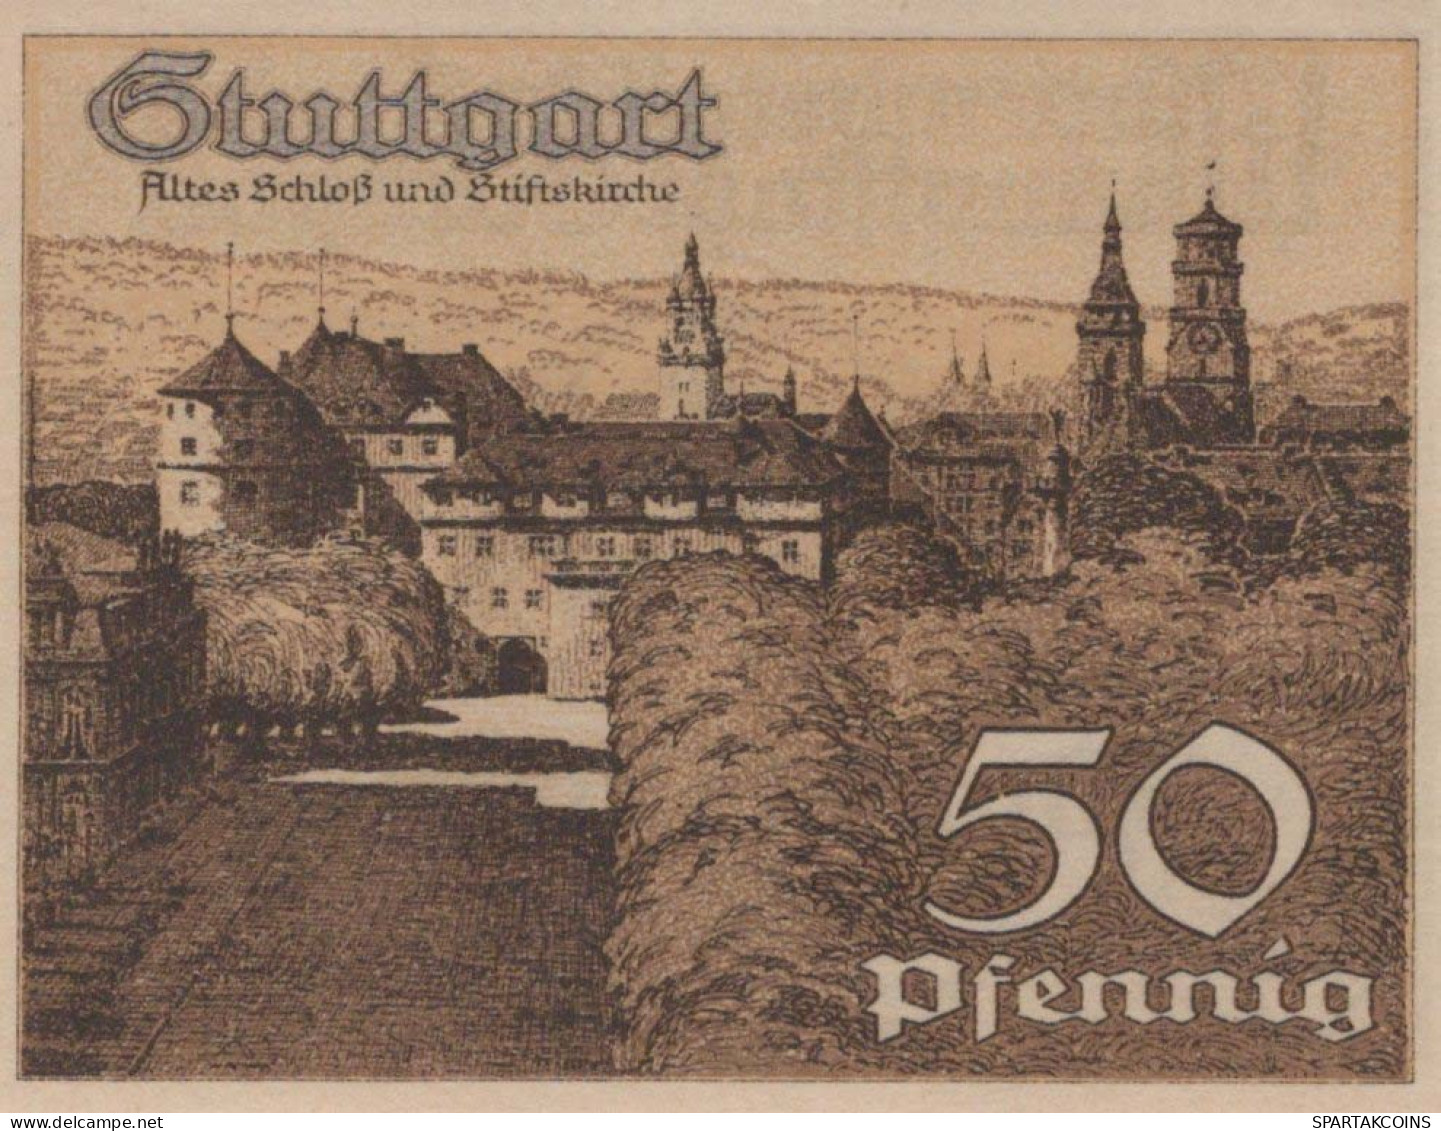 50 PFENNIG 1921 Stadt STUTTGART Württemberg UNC DEUTSCHLAND Notgeld #PC417 - [11] Emisiones Locales